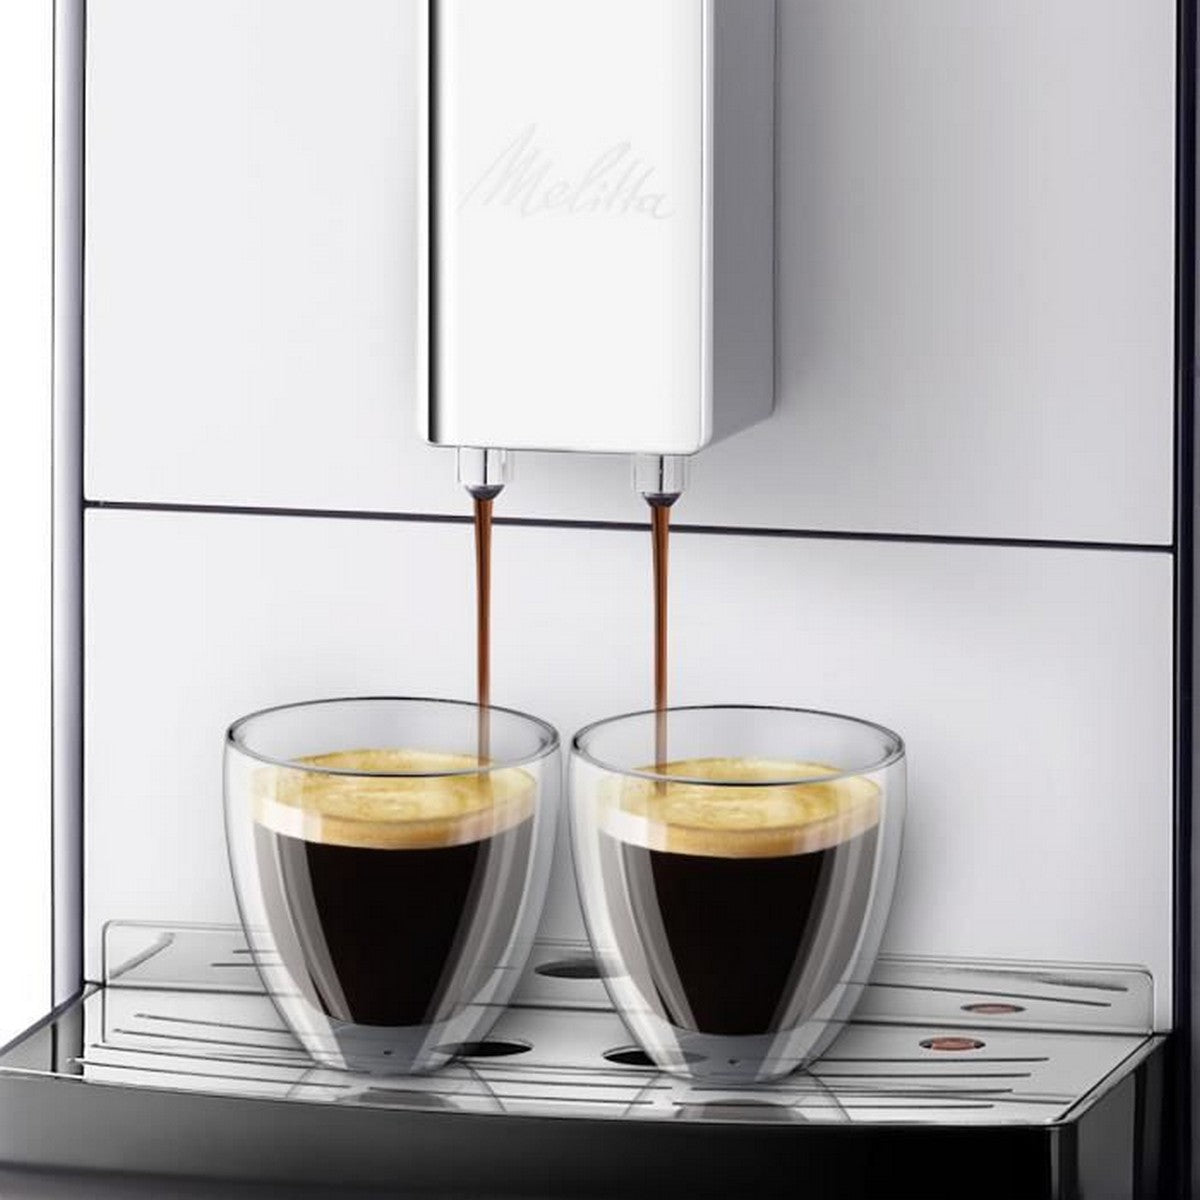 Суперавтоматическая кофеварка Melitta Solo Silver E950-103 Серебристый 1400 W 1450 W 15 bar 1,2 L 1400 W